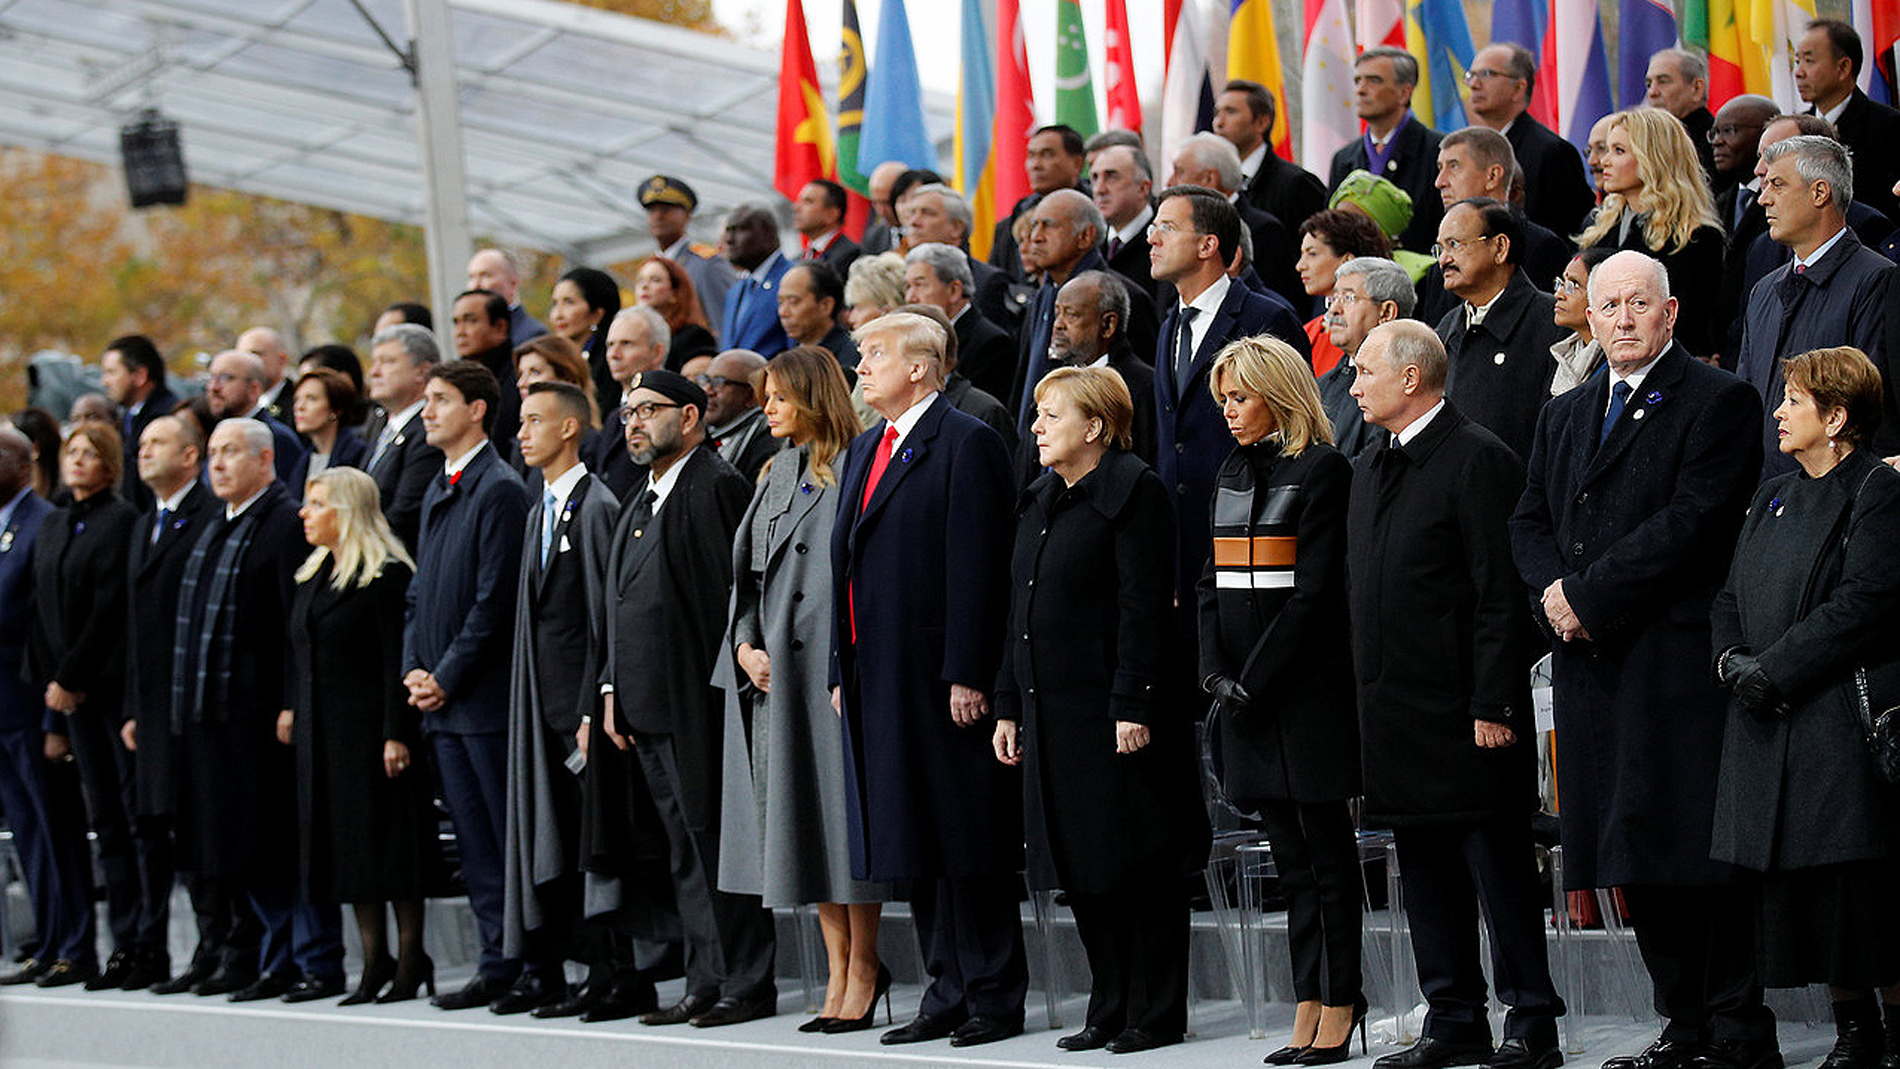 Líderes mundiales conmemoraron centenario del fin de la I Guerra Mundial